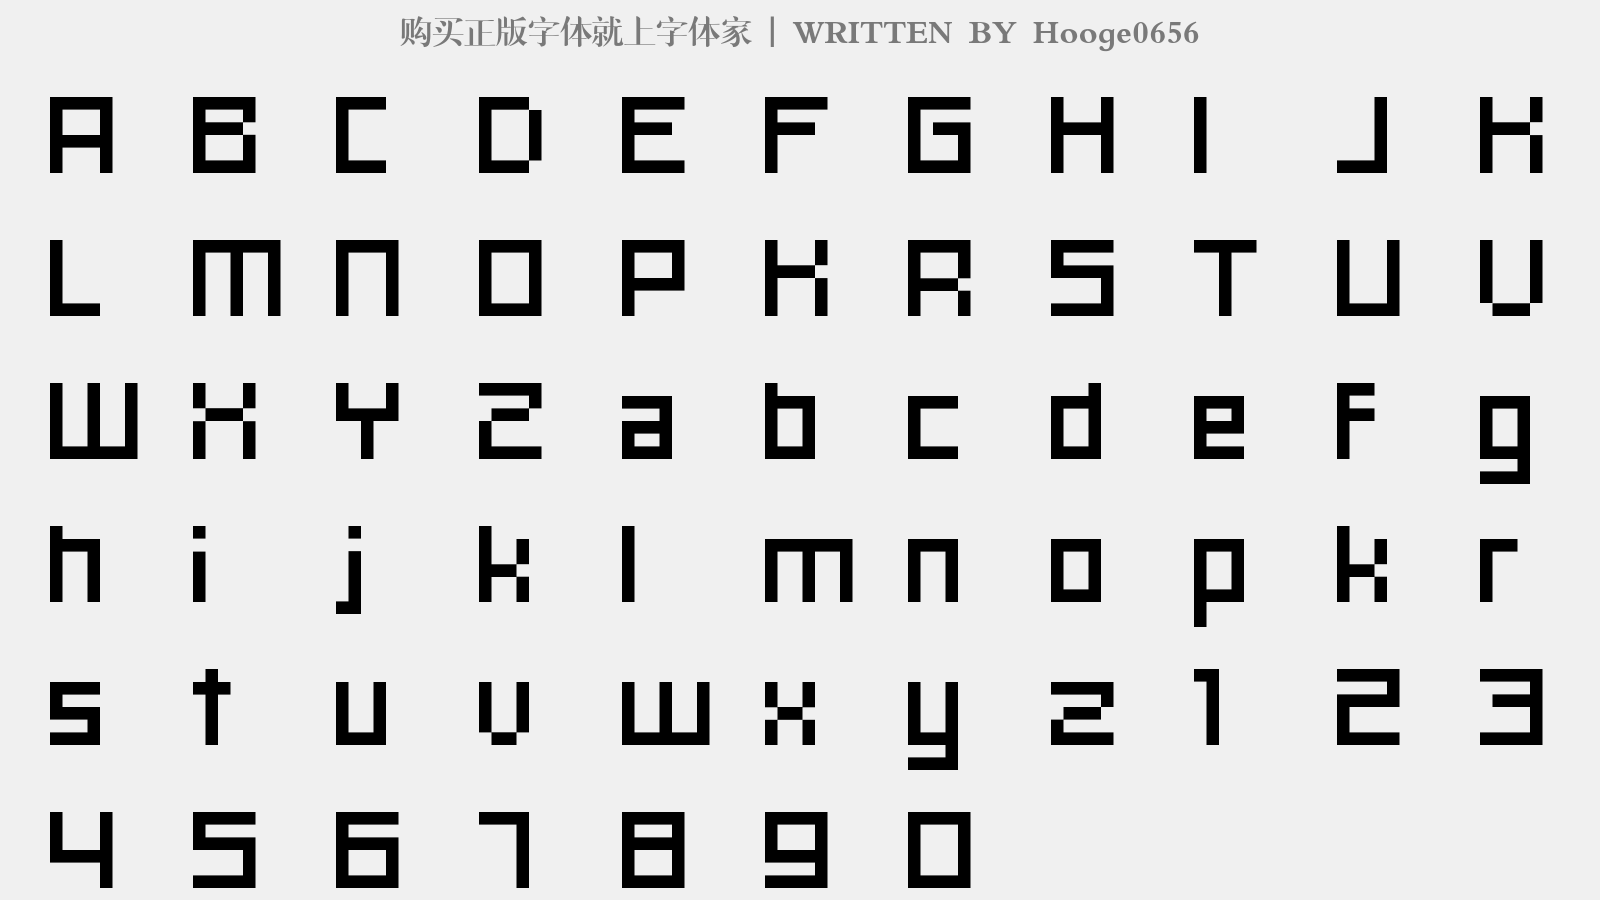 Hooge0656 - 大写字母/小写字母/数字